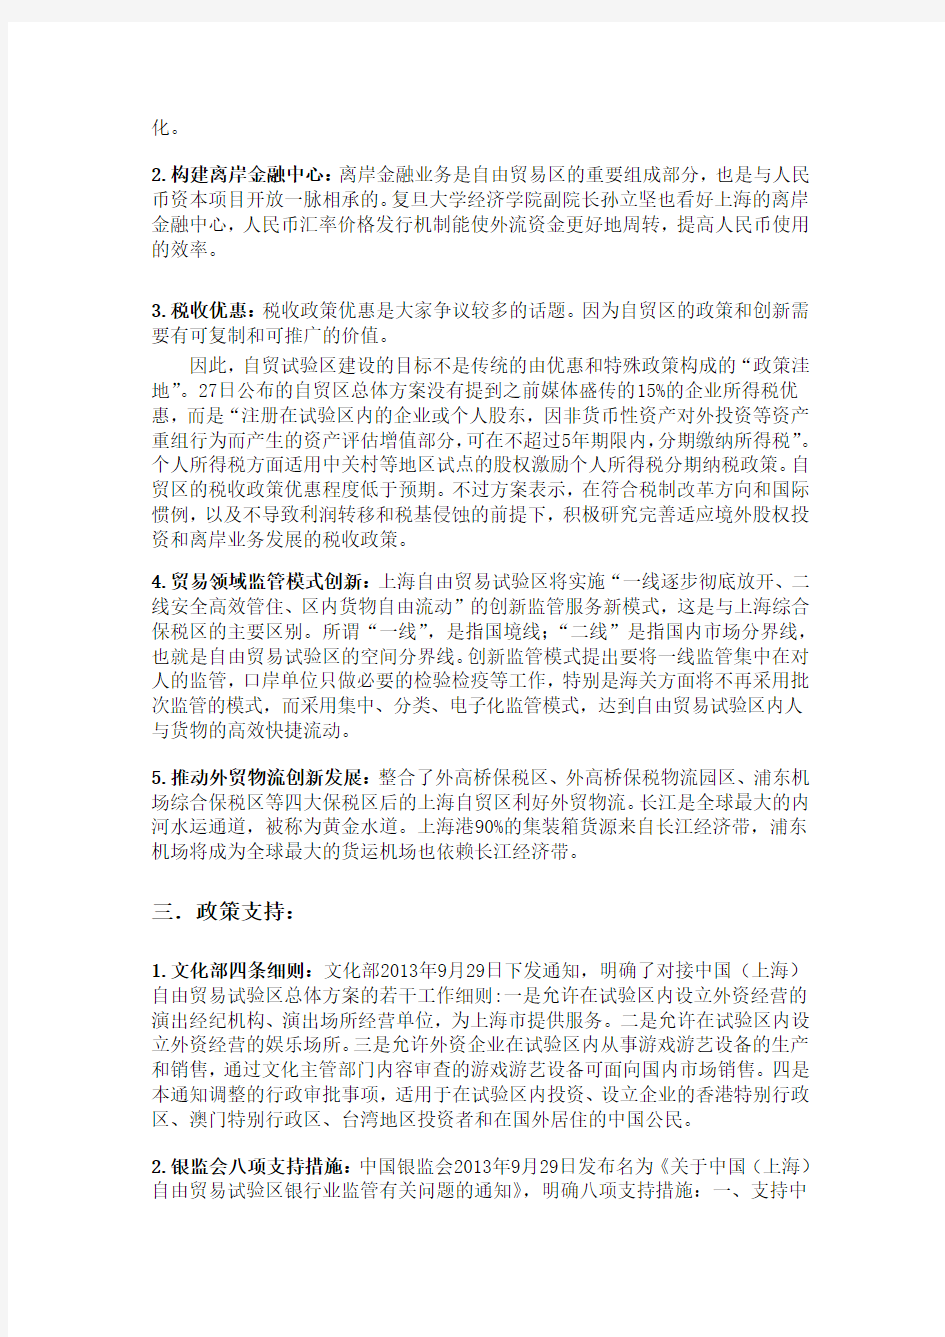 上海自贸区基本概况(入驻企业等)